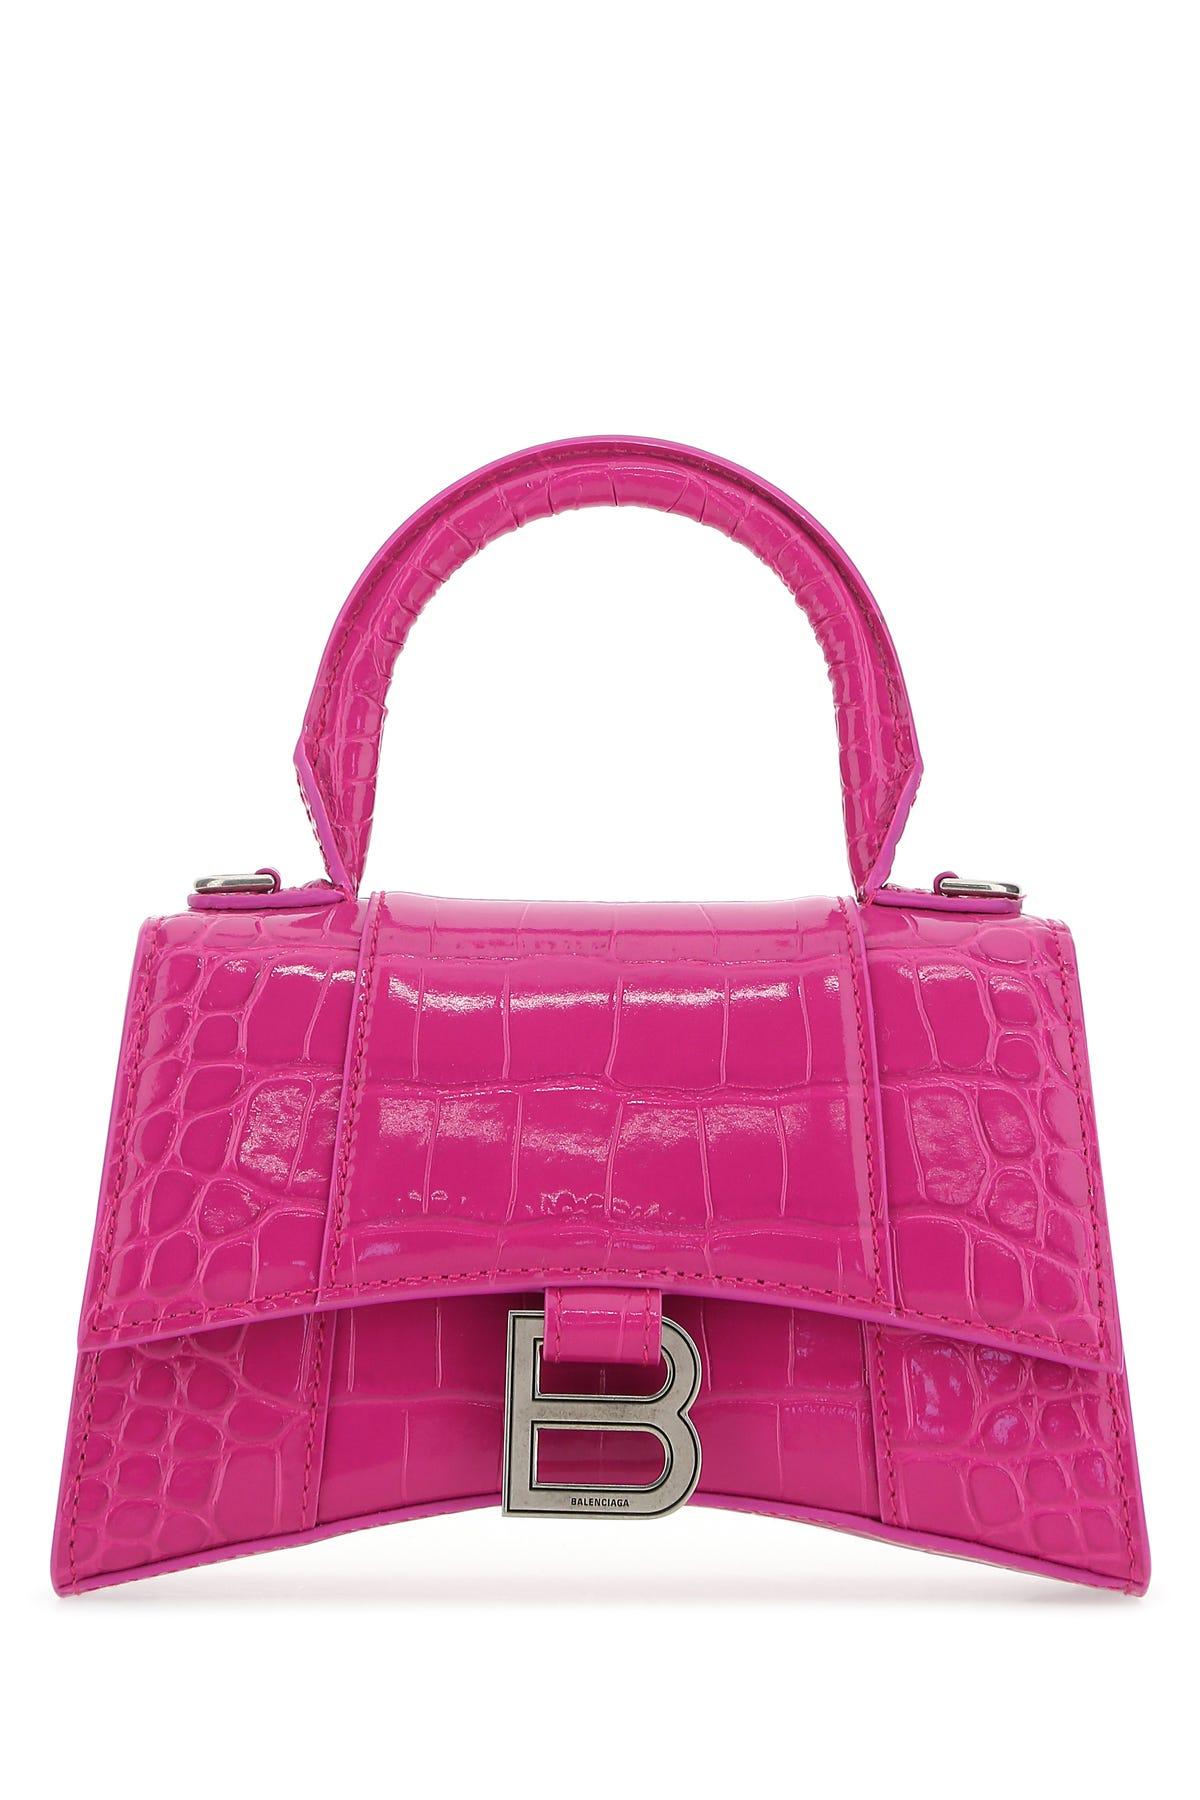 Balenciaga Pink Croc Small Hourglass Bag Balenciaga